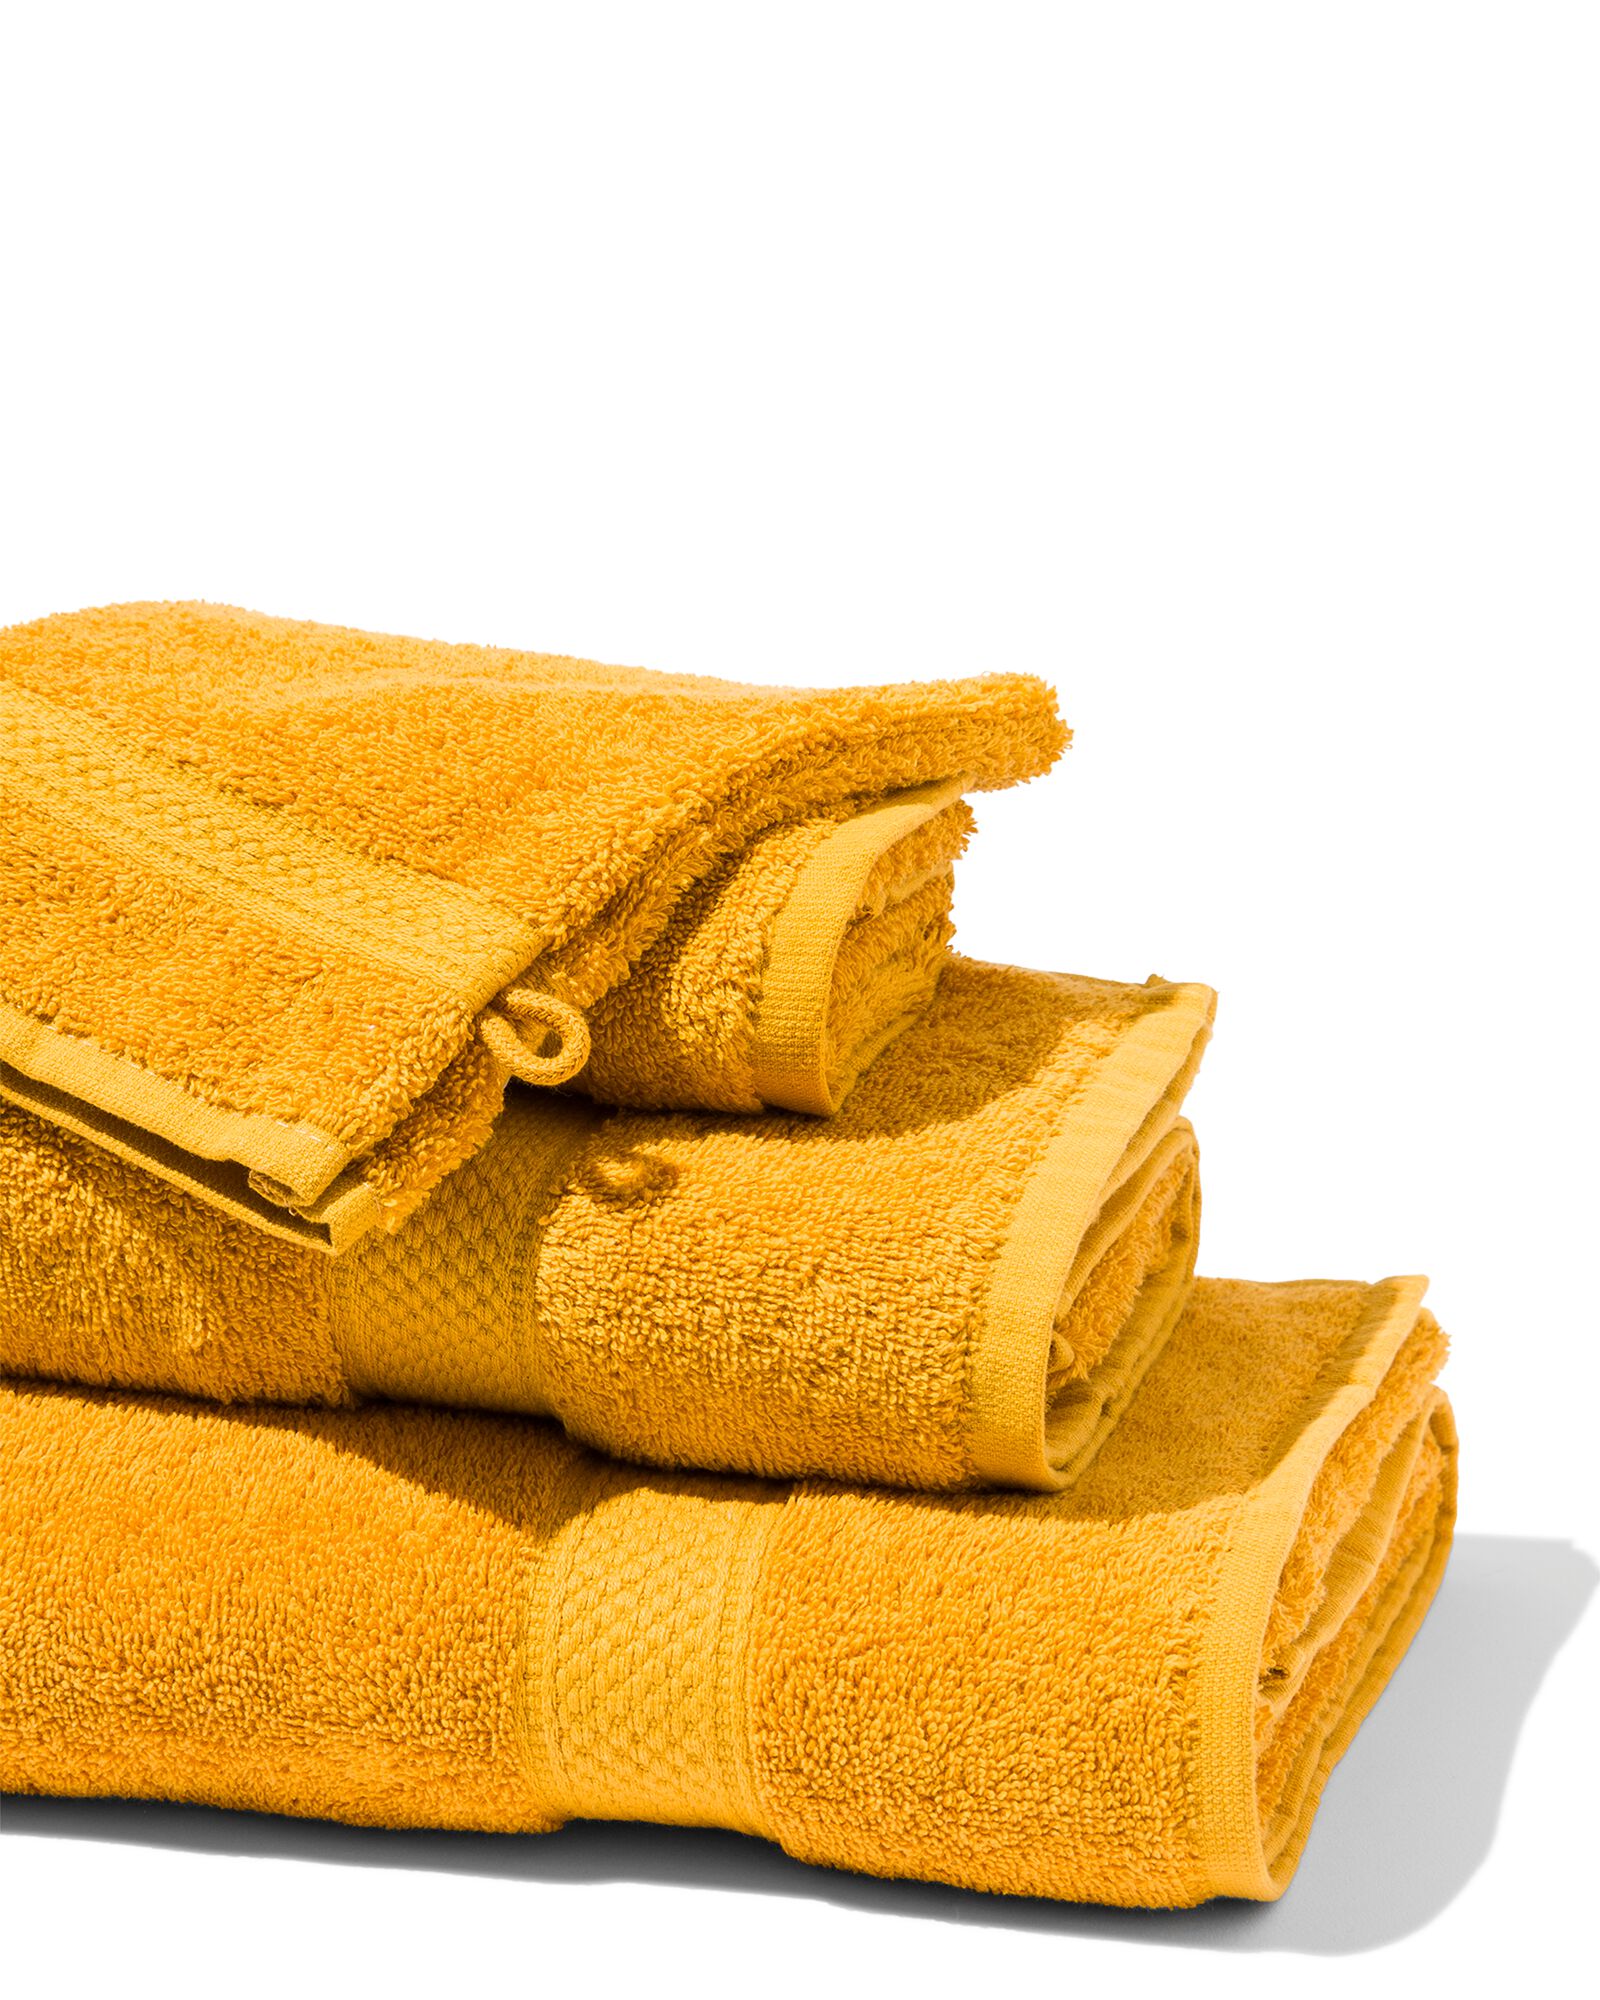 hema serviettes de bain - qualité épaisse jaune ocre (jaune ocre)